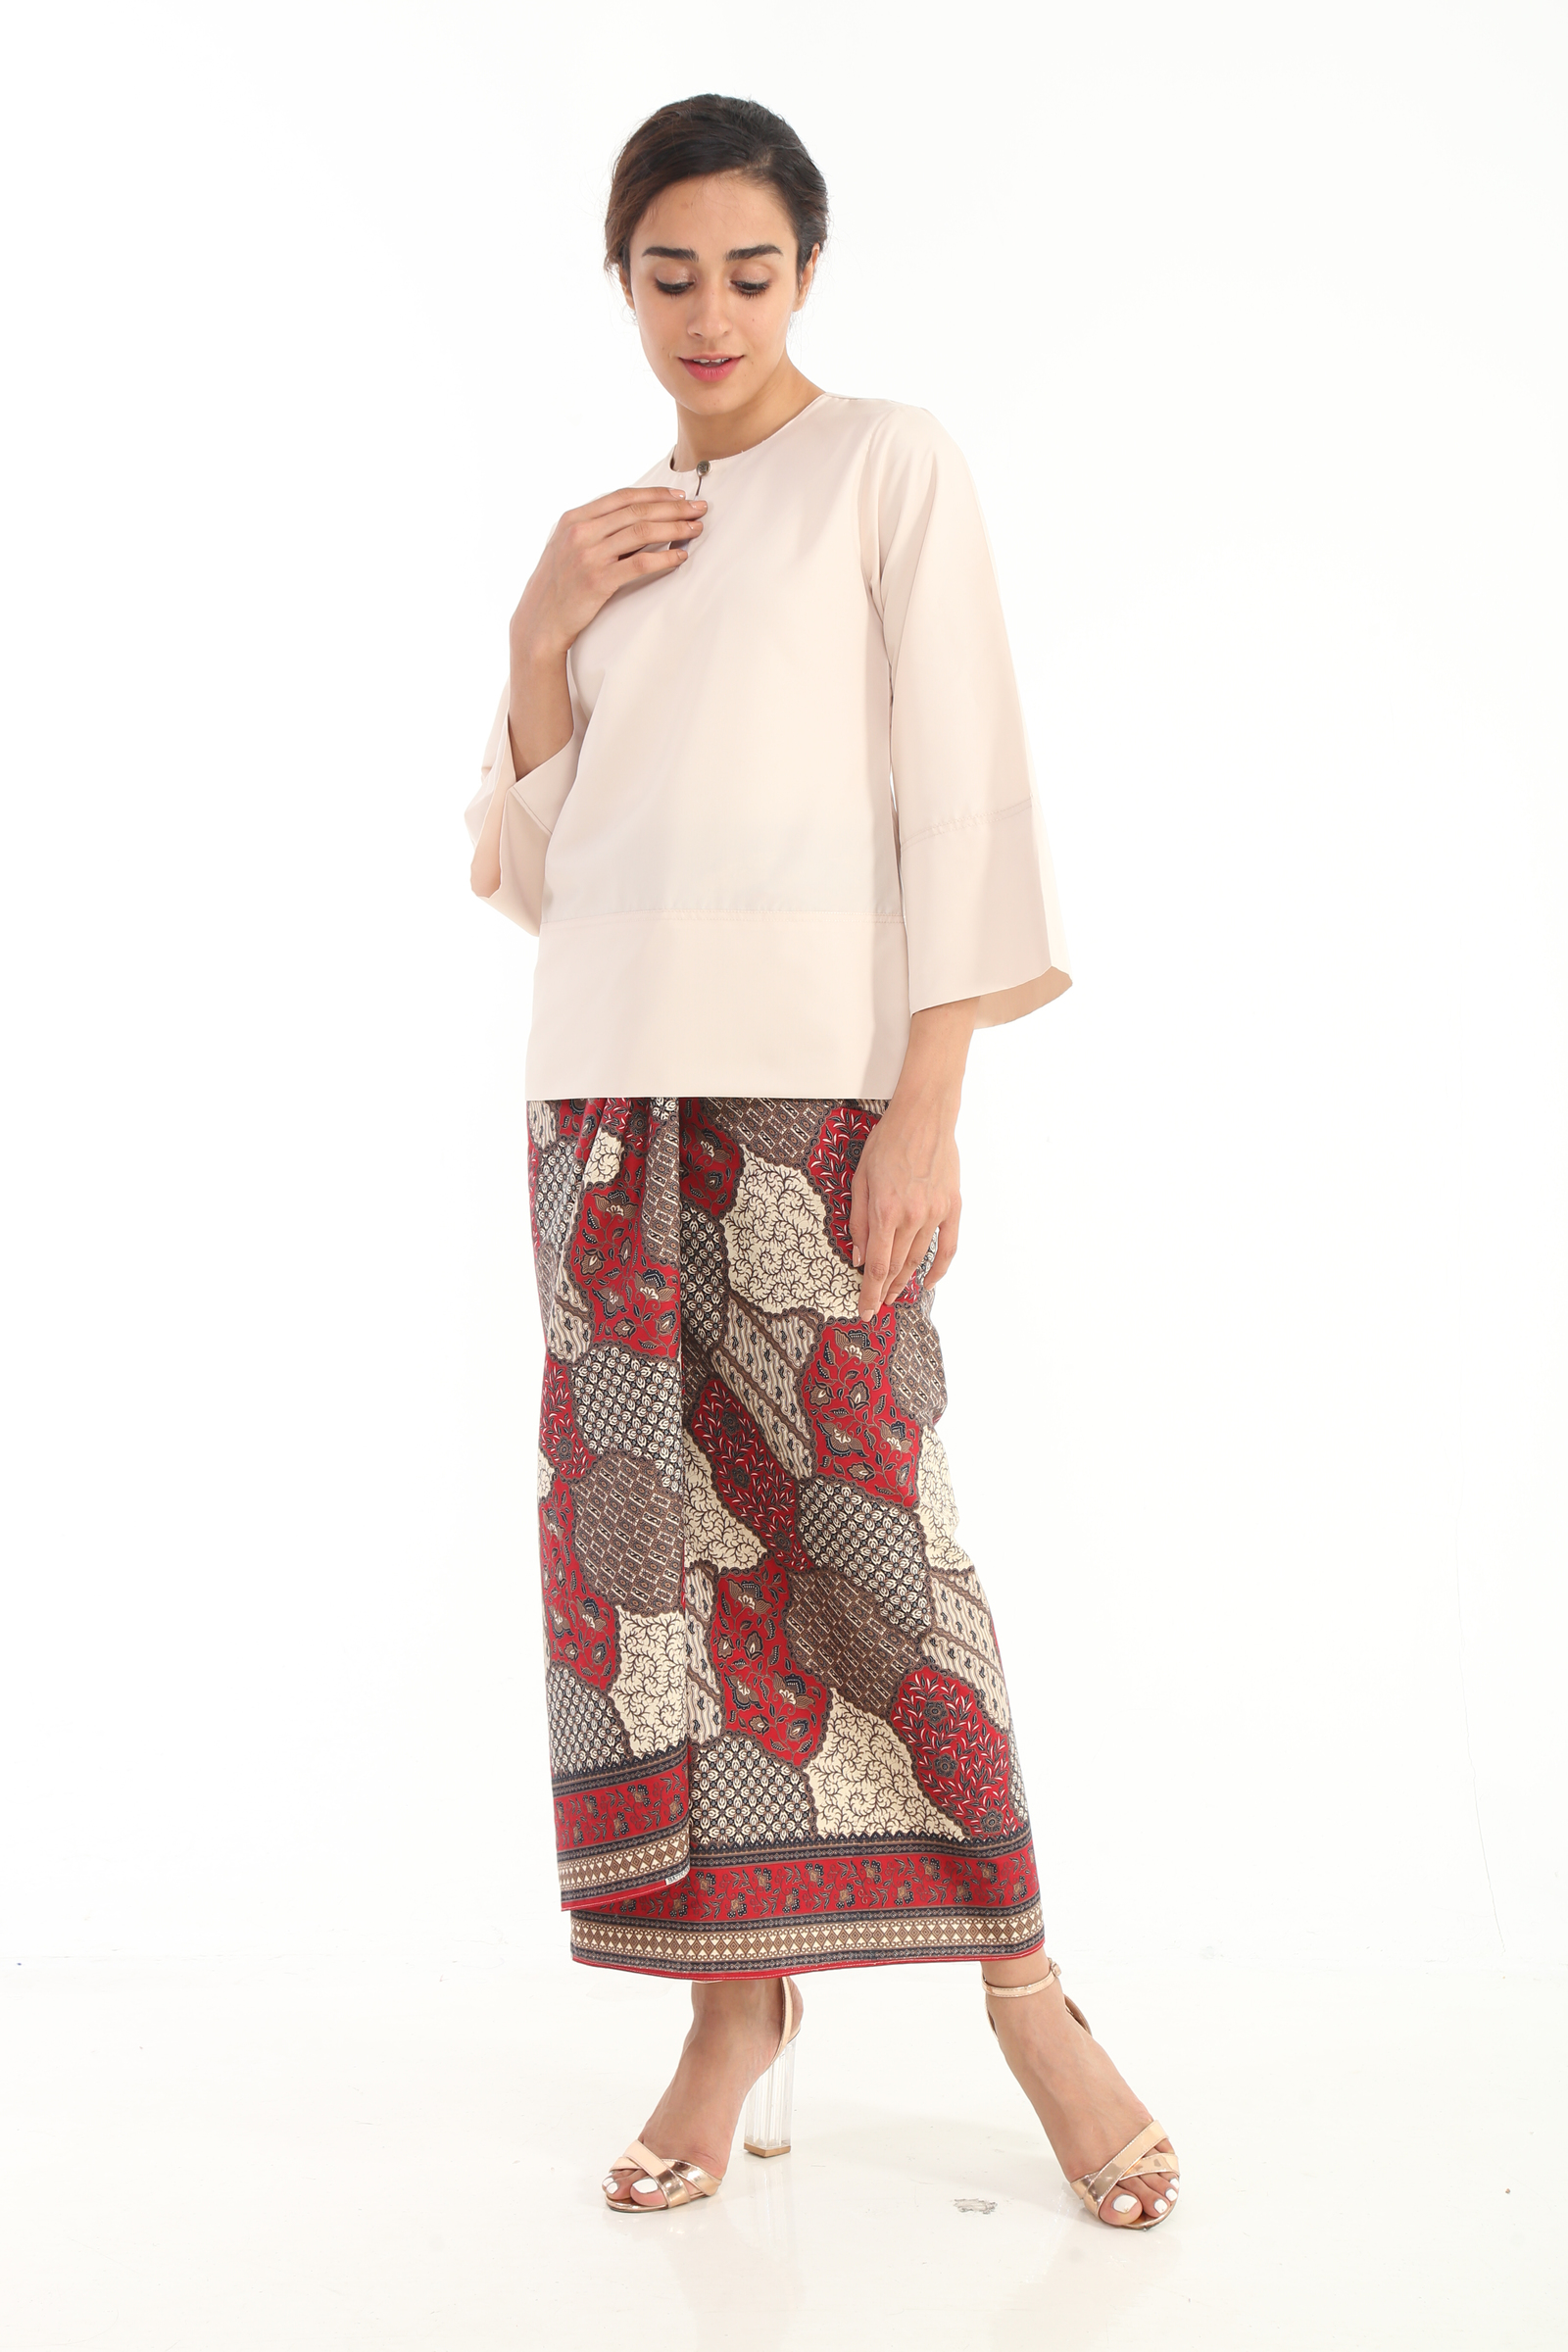 Baju Kurung Kedah Batik - The classic baju kurung kedah gets a modern